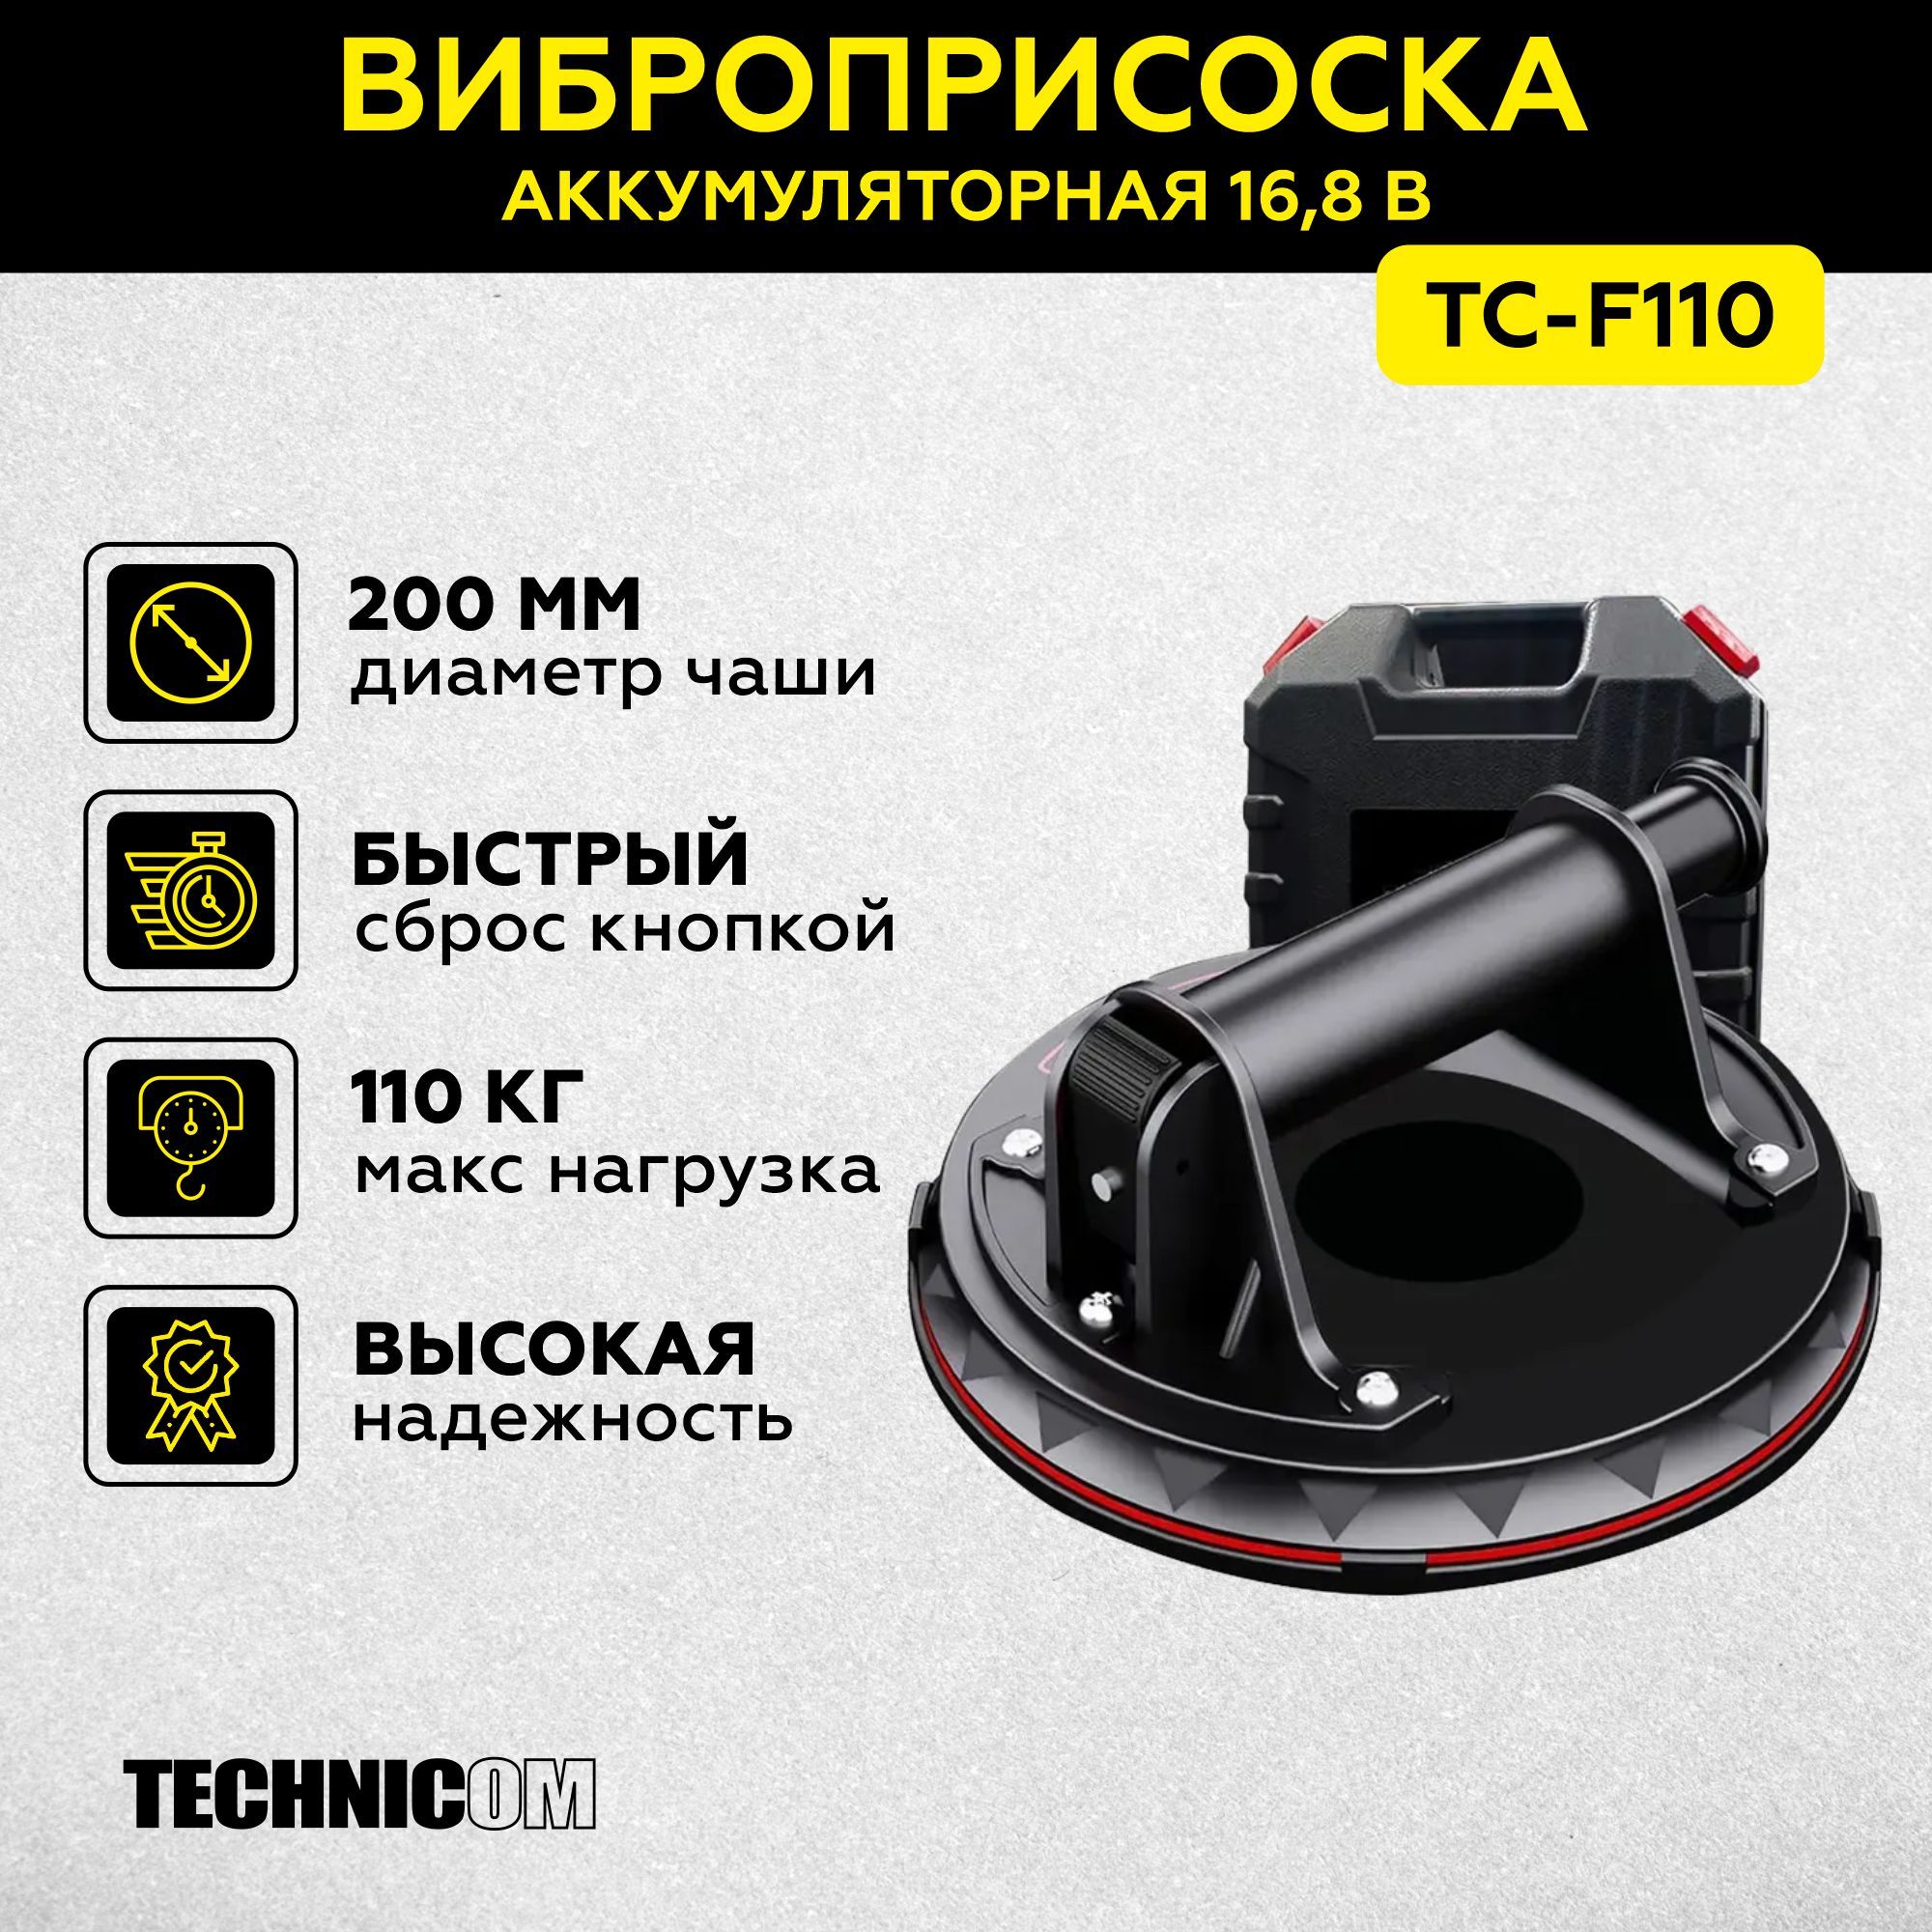 Присоска с ручной помпой TECHNICOM 110кг TC-F110 присоска ножницы для снятия дисплея rexant